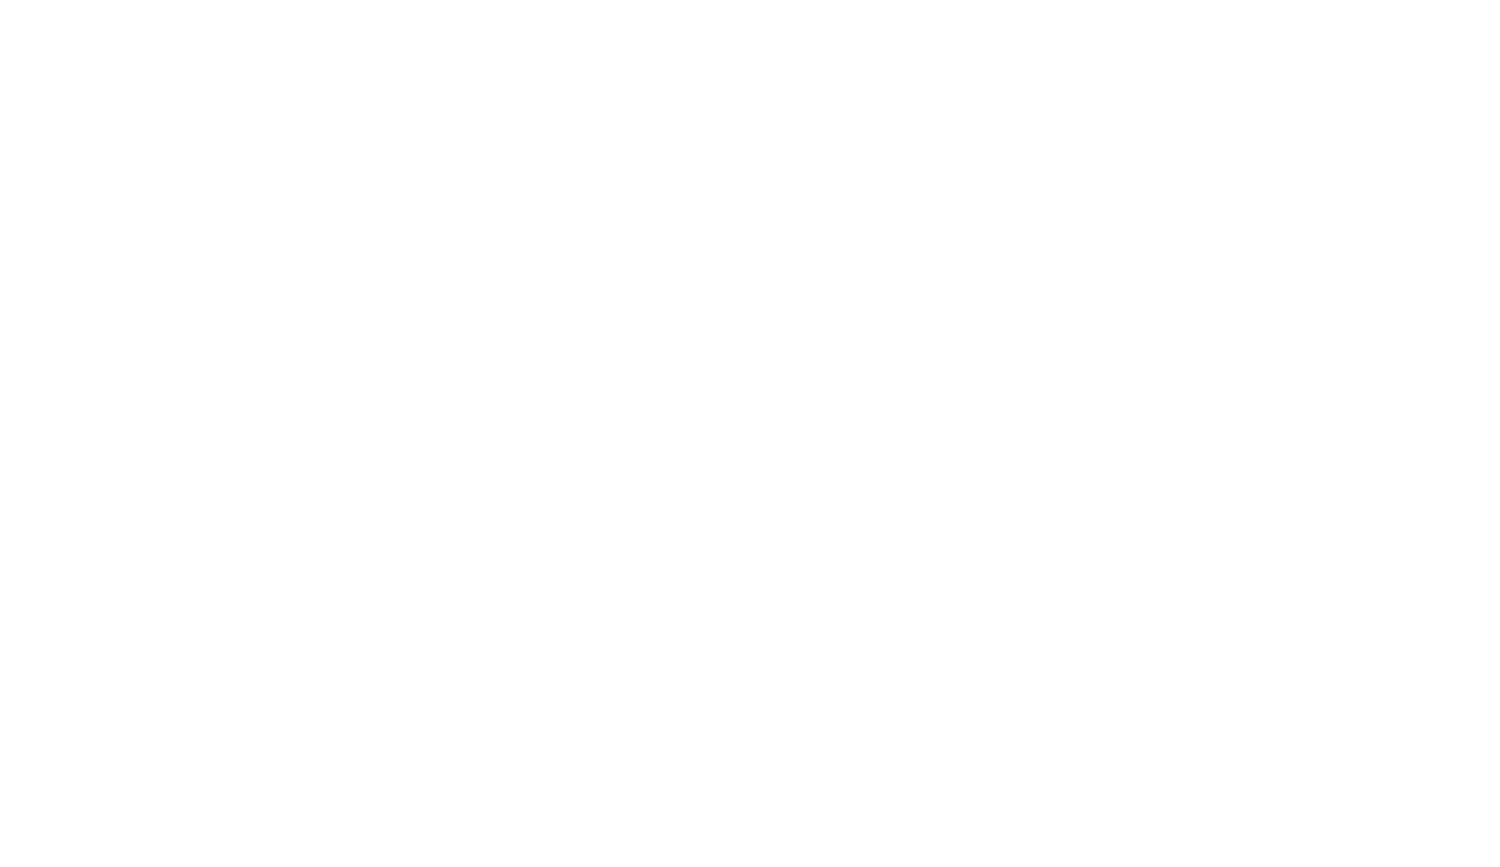 EDGE 360 FITNESS